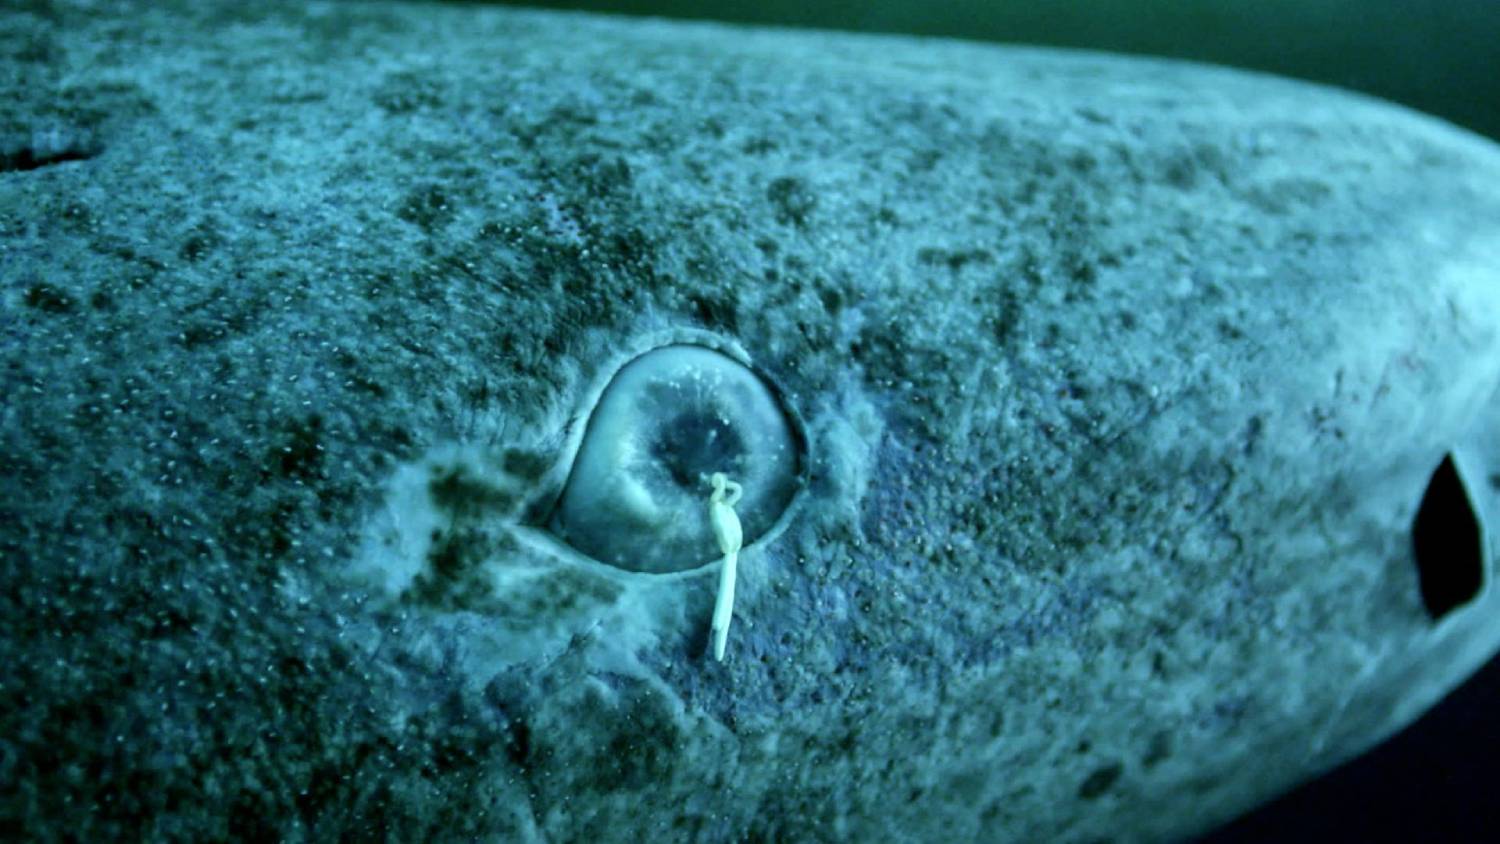 Ommatokoita elongata requin du Groenland